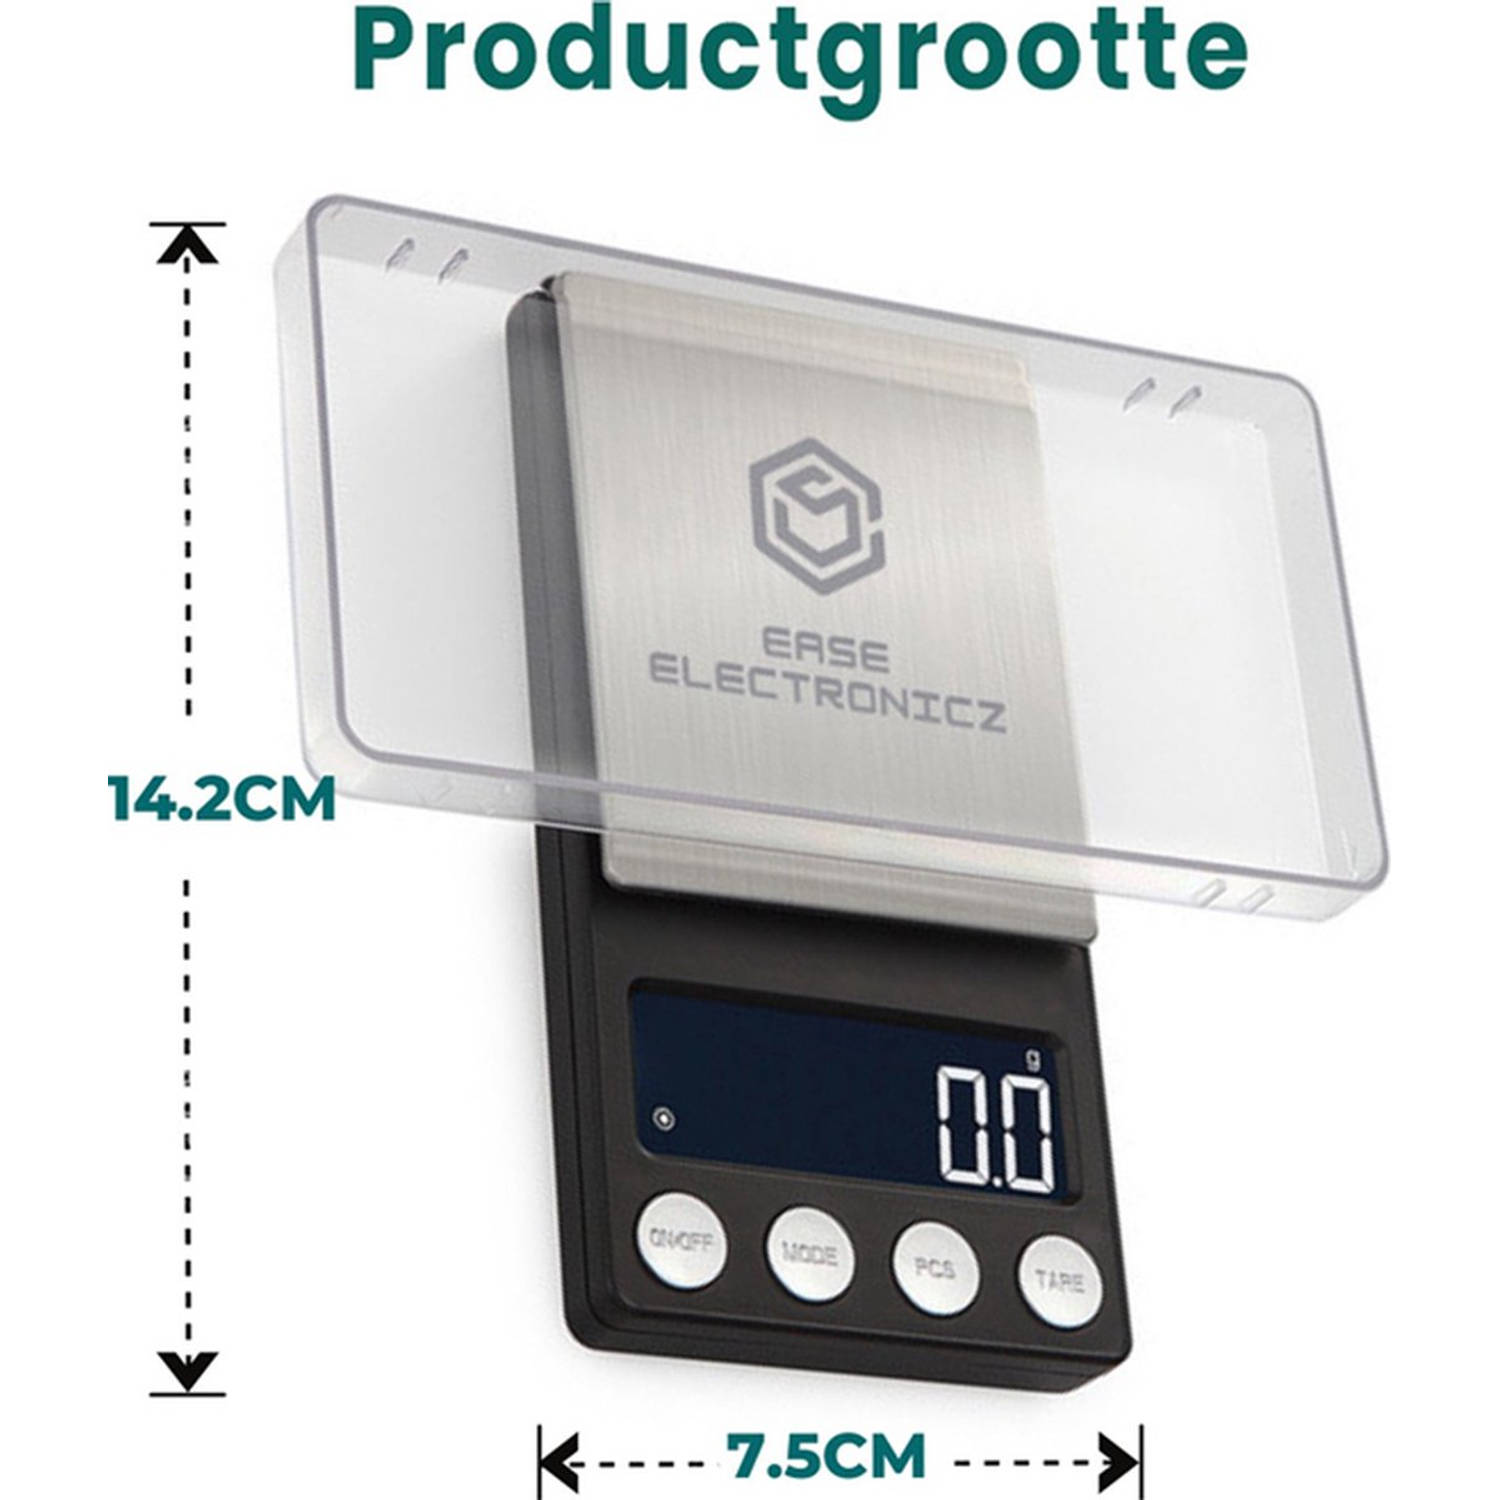 Ease Electronicz digitale precisie - 0,01 tot 200 - 14.2 x 7.5 cm pocket scale op batterij | Blokker